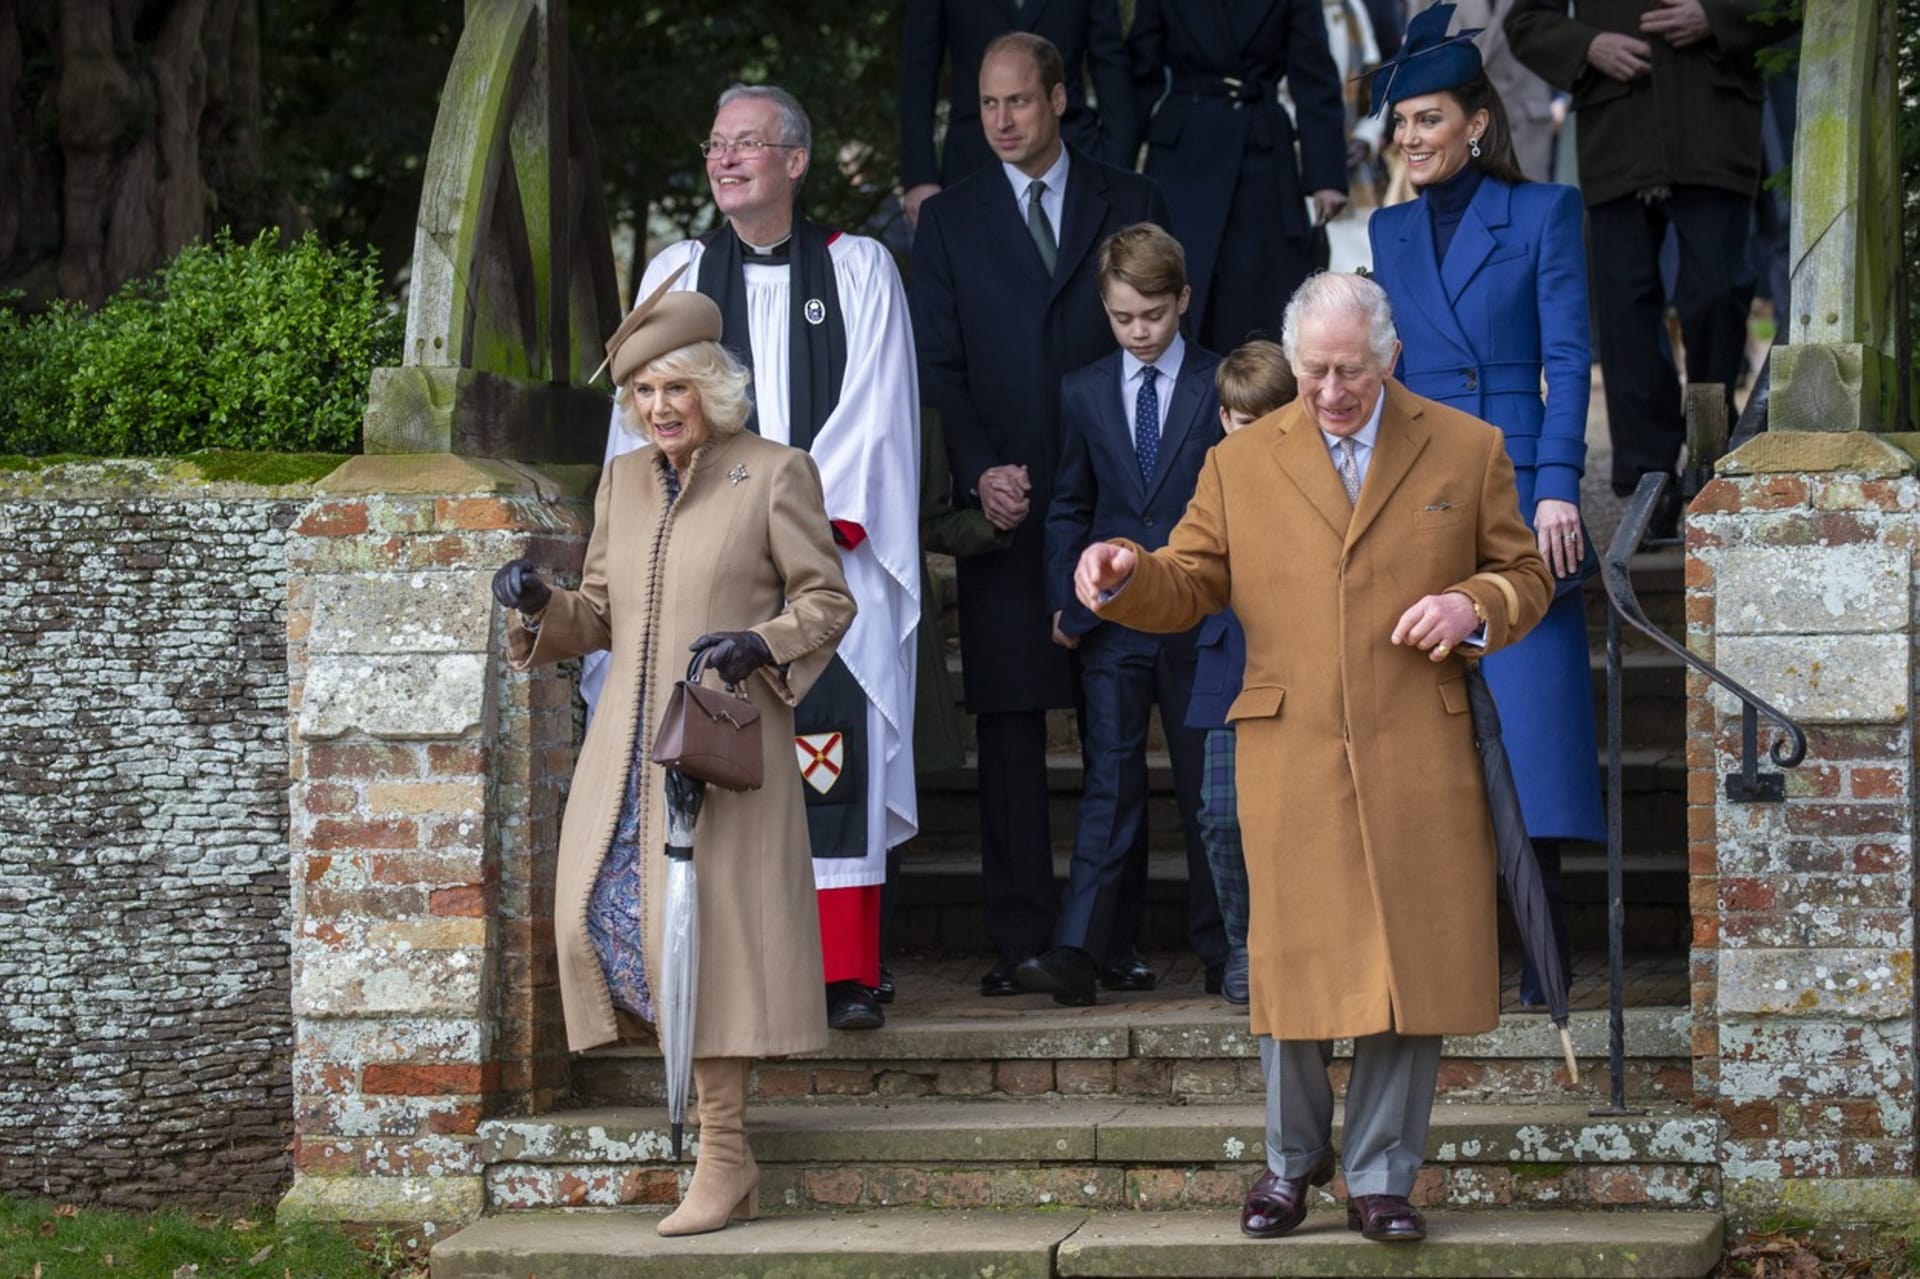 Král se s rodinou zúčastnil tradiční vánoční bohoslužby. Do kostela v Sandringhamu jej doprovodila manželka Camilla, syn William s manželkou Kate a dětmi Georgem, Charlotte a Louisem. 